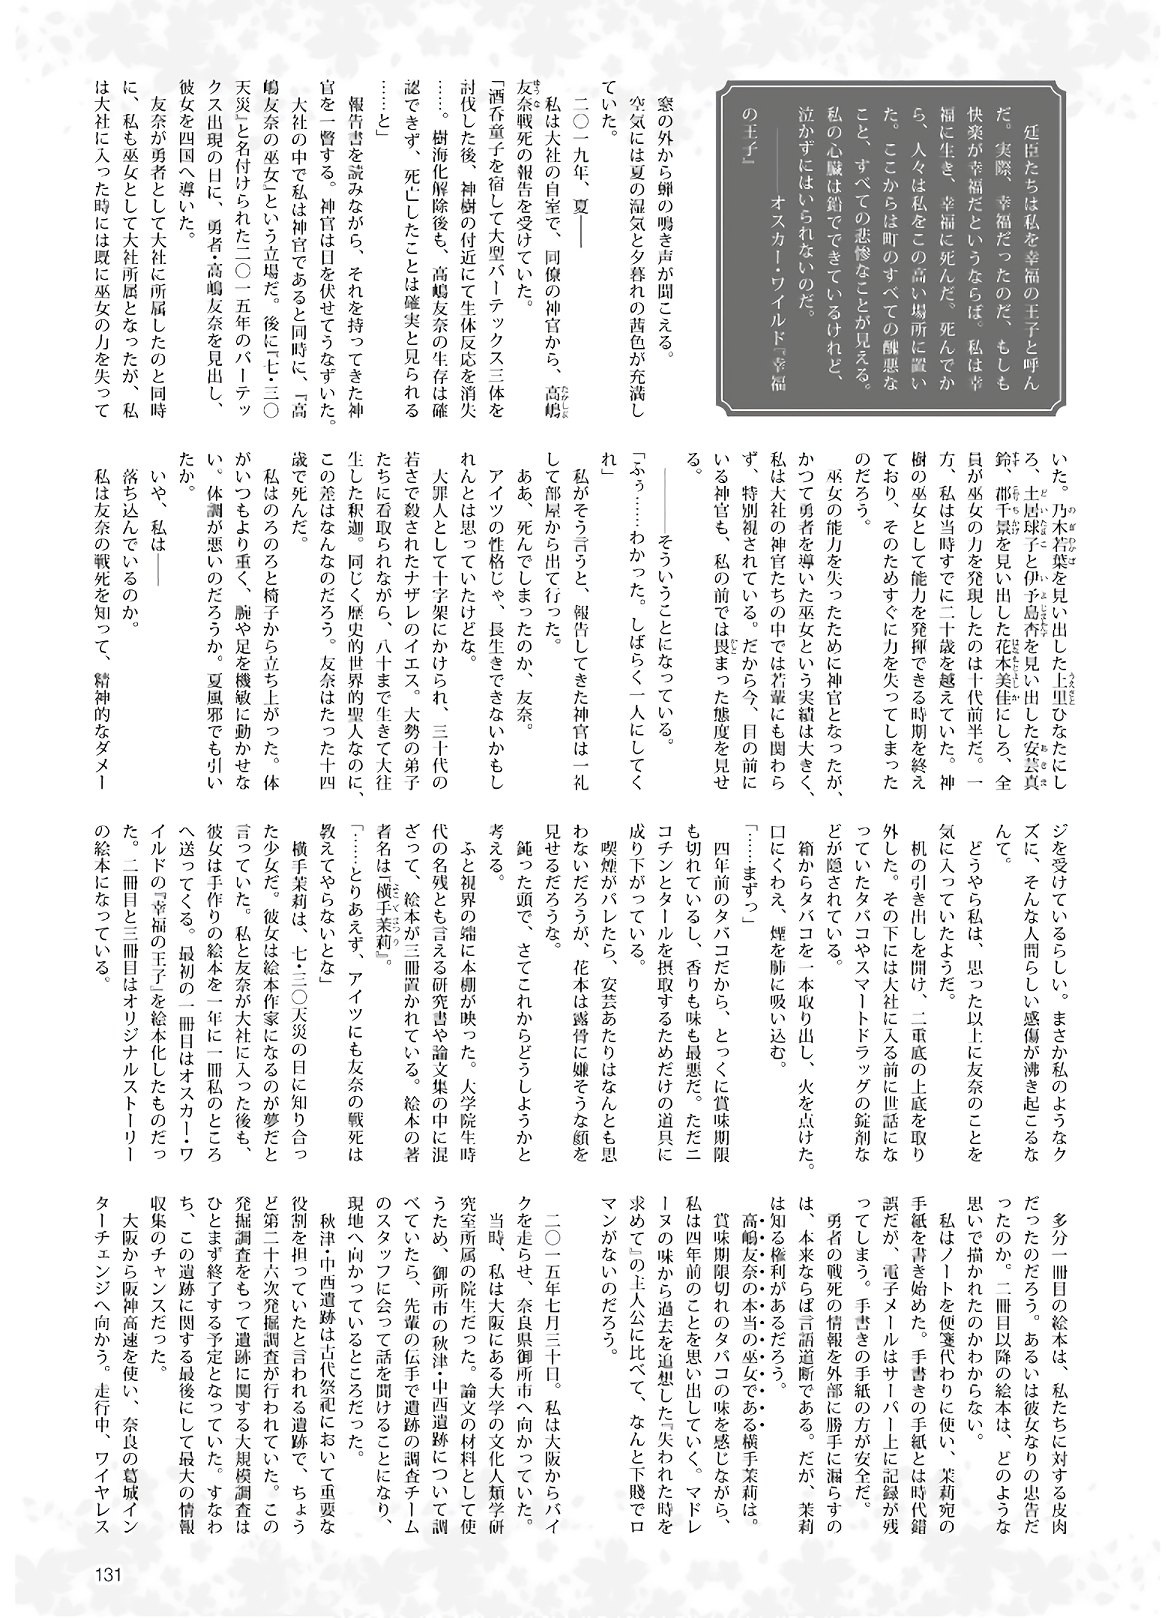 Dengeki G's Magazine #286 - May 2021 128